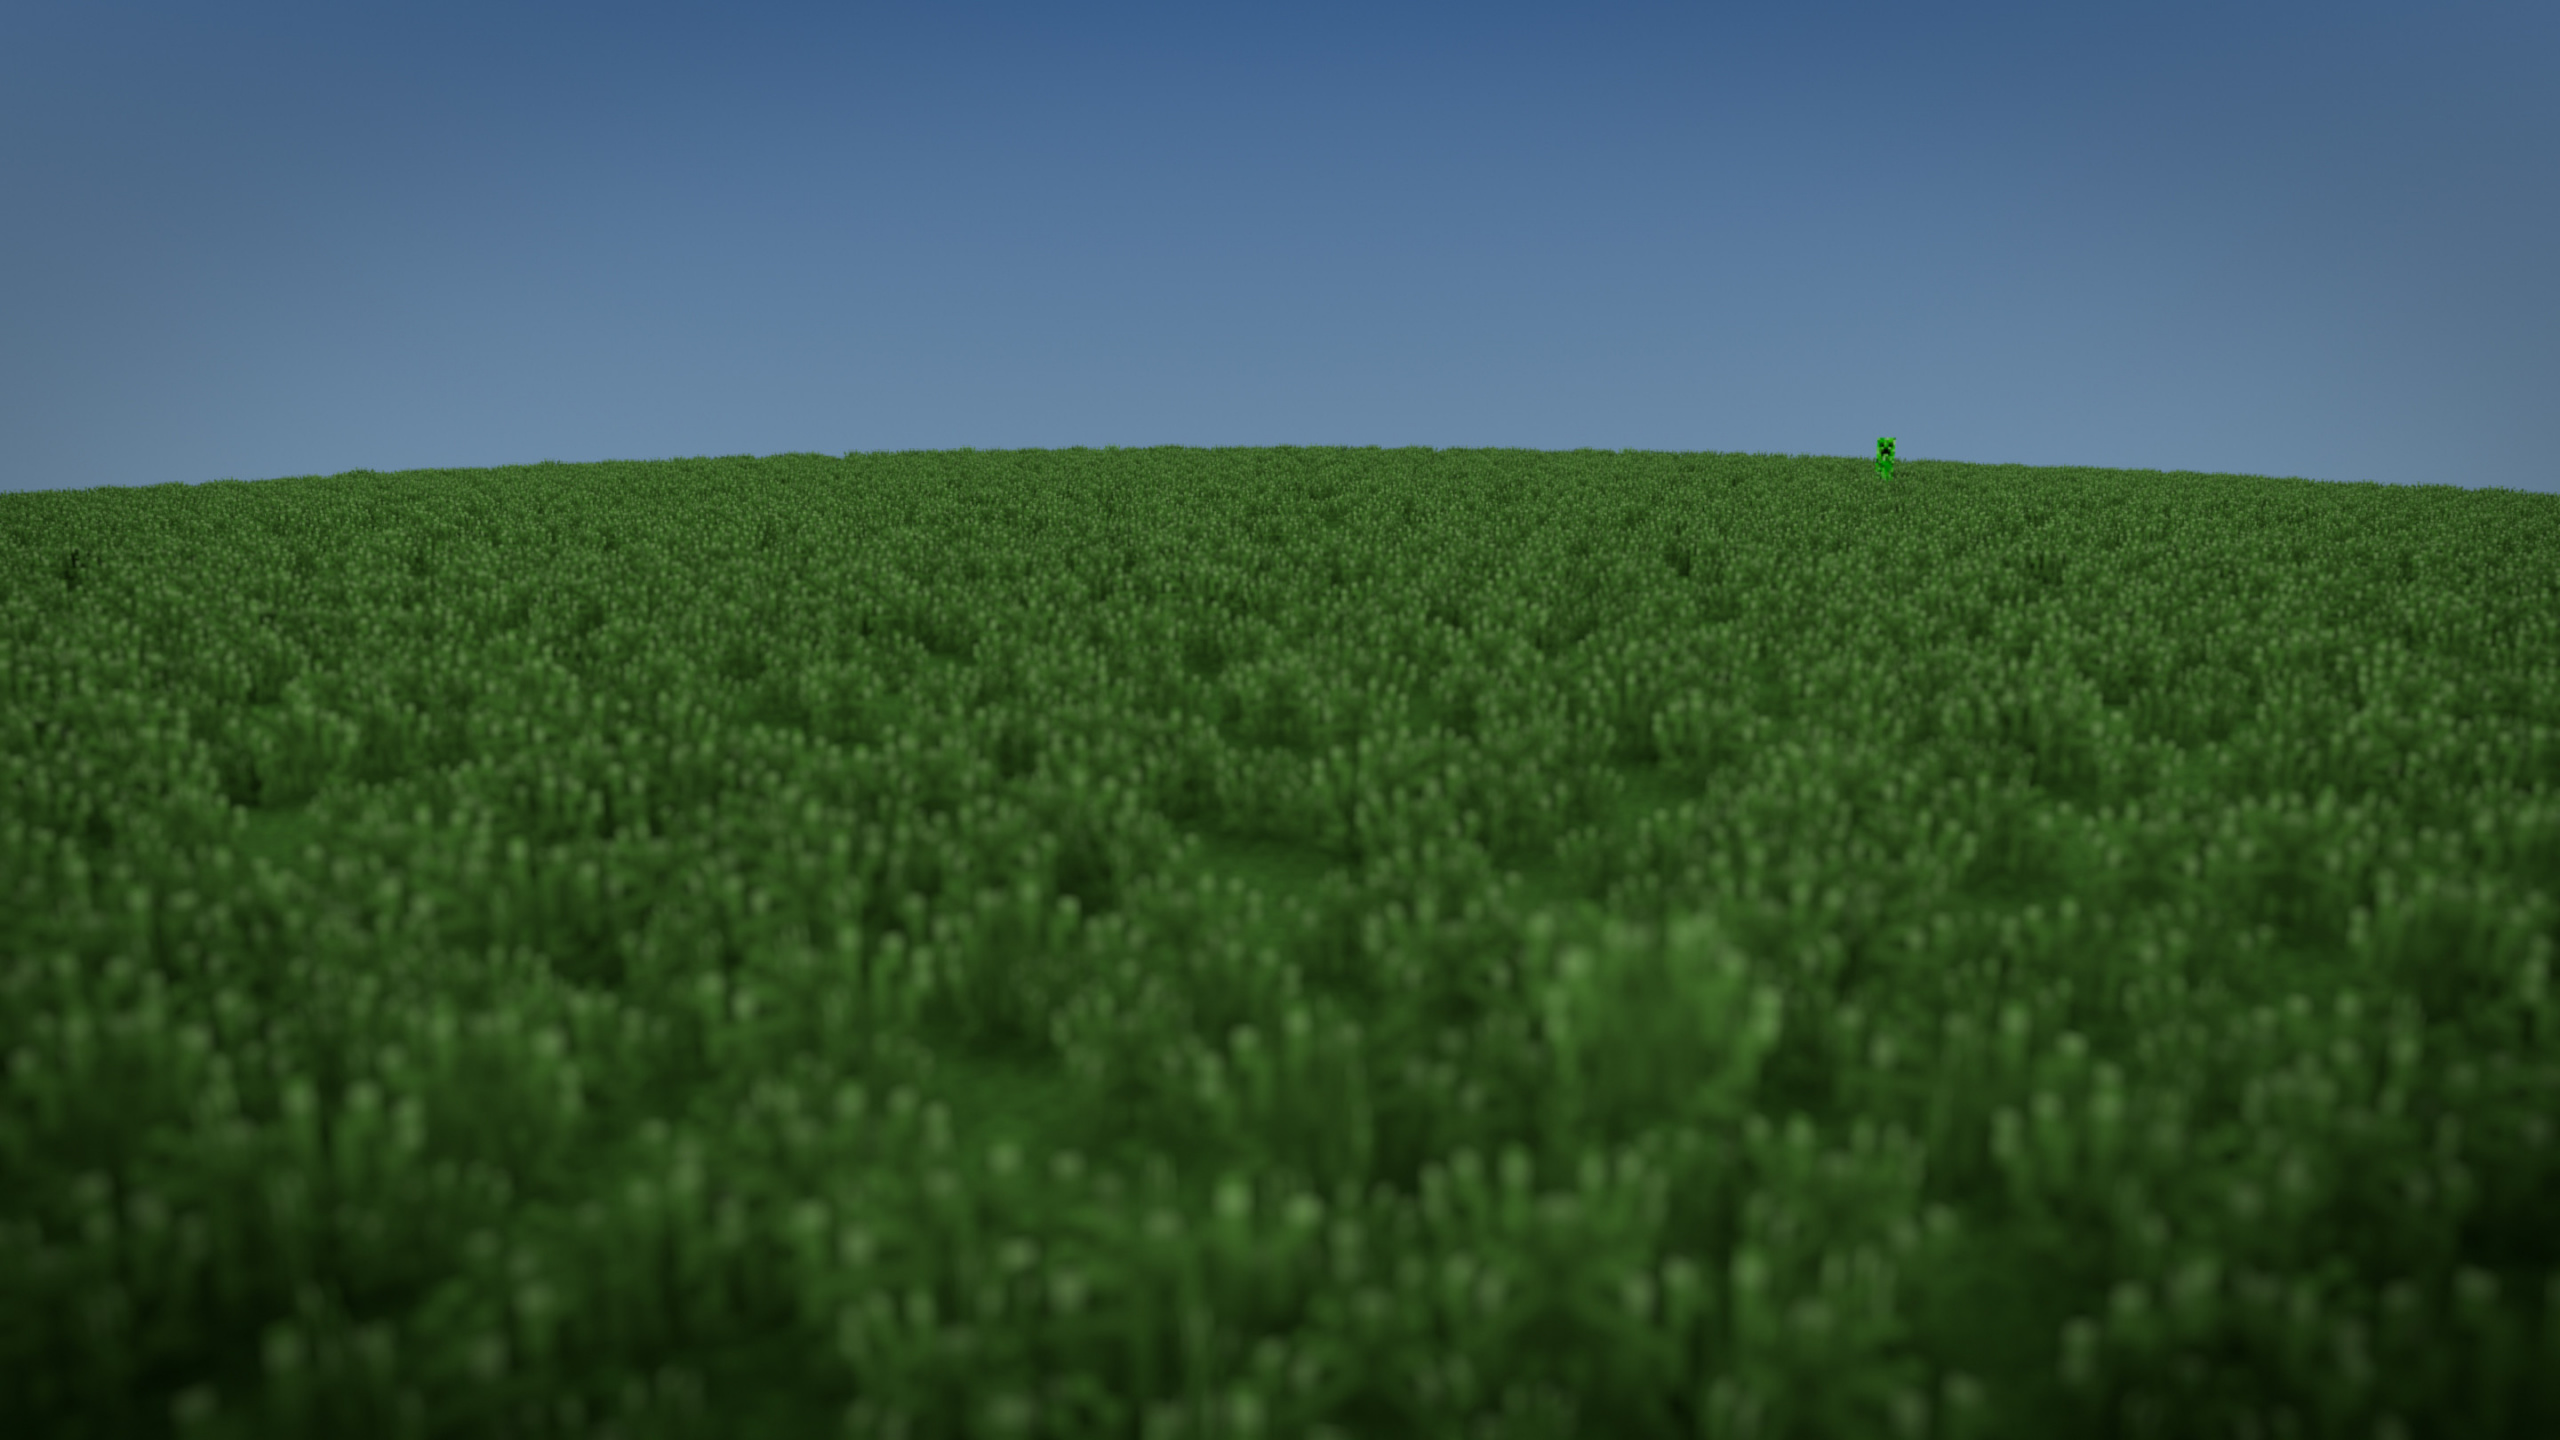 Minecraft, Creeper, Grassland, Field, Crop. Wallpaper in 2560x1440 Resolution